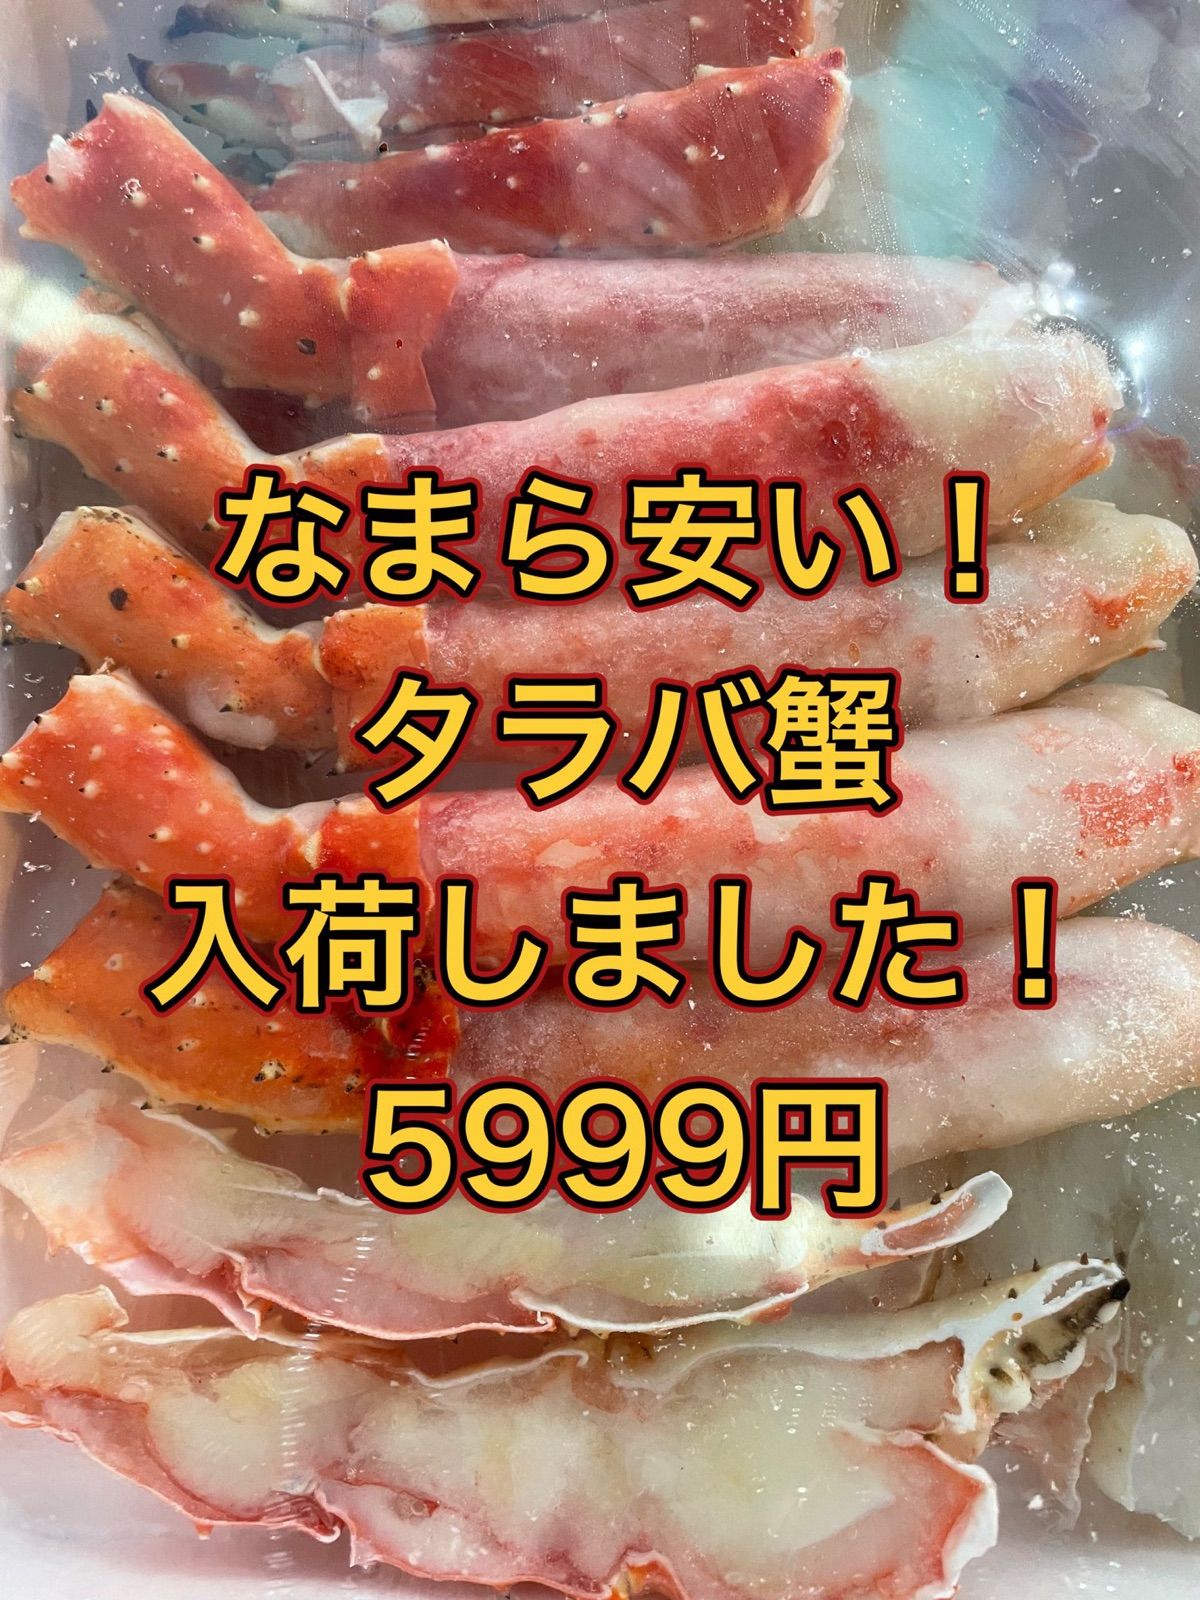 なまら安い:double_exclamation_mark:食べやすい600gのカットタラバ蟹:crab: